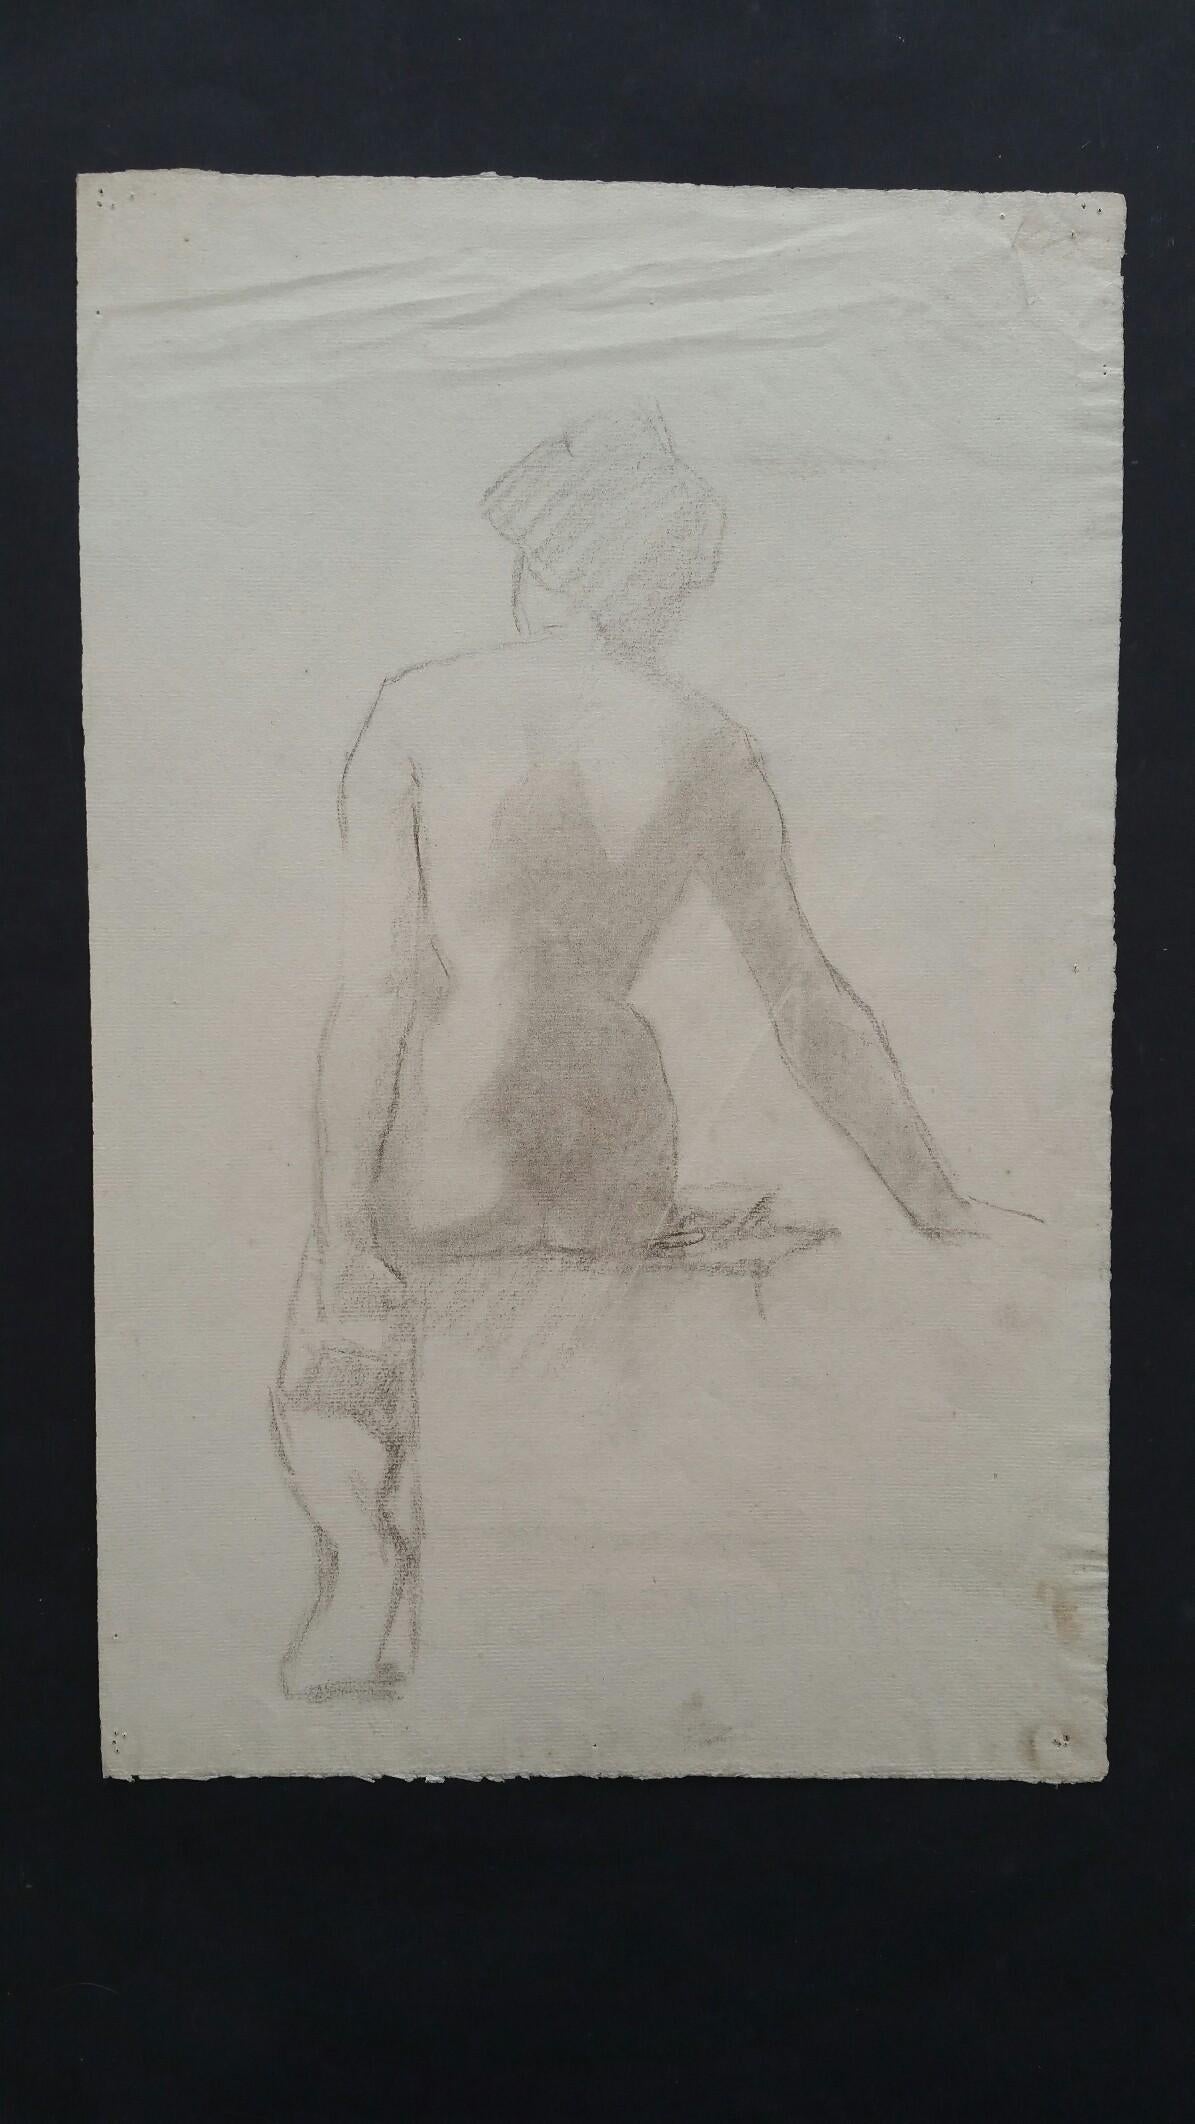 Esquisse en graphite anglais d'un nu féminin, vue de dos, assis.
par Henry George Moon (britannique, 1857-1905).
sur papier d'artiste blanc cassé, non encadré.
Mesures : feuille 18.75 x 12 pouces.

Provenance : de la succession de